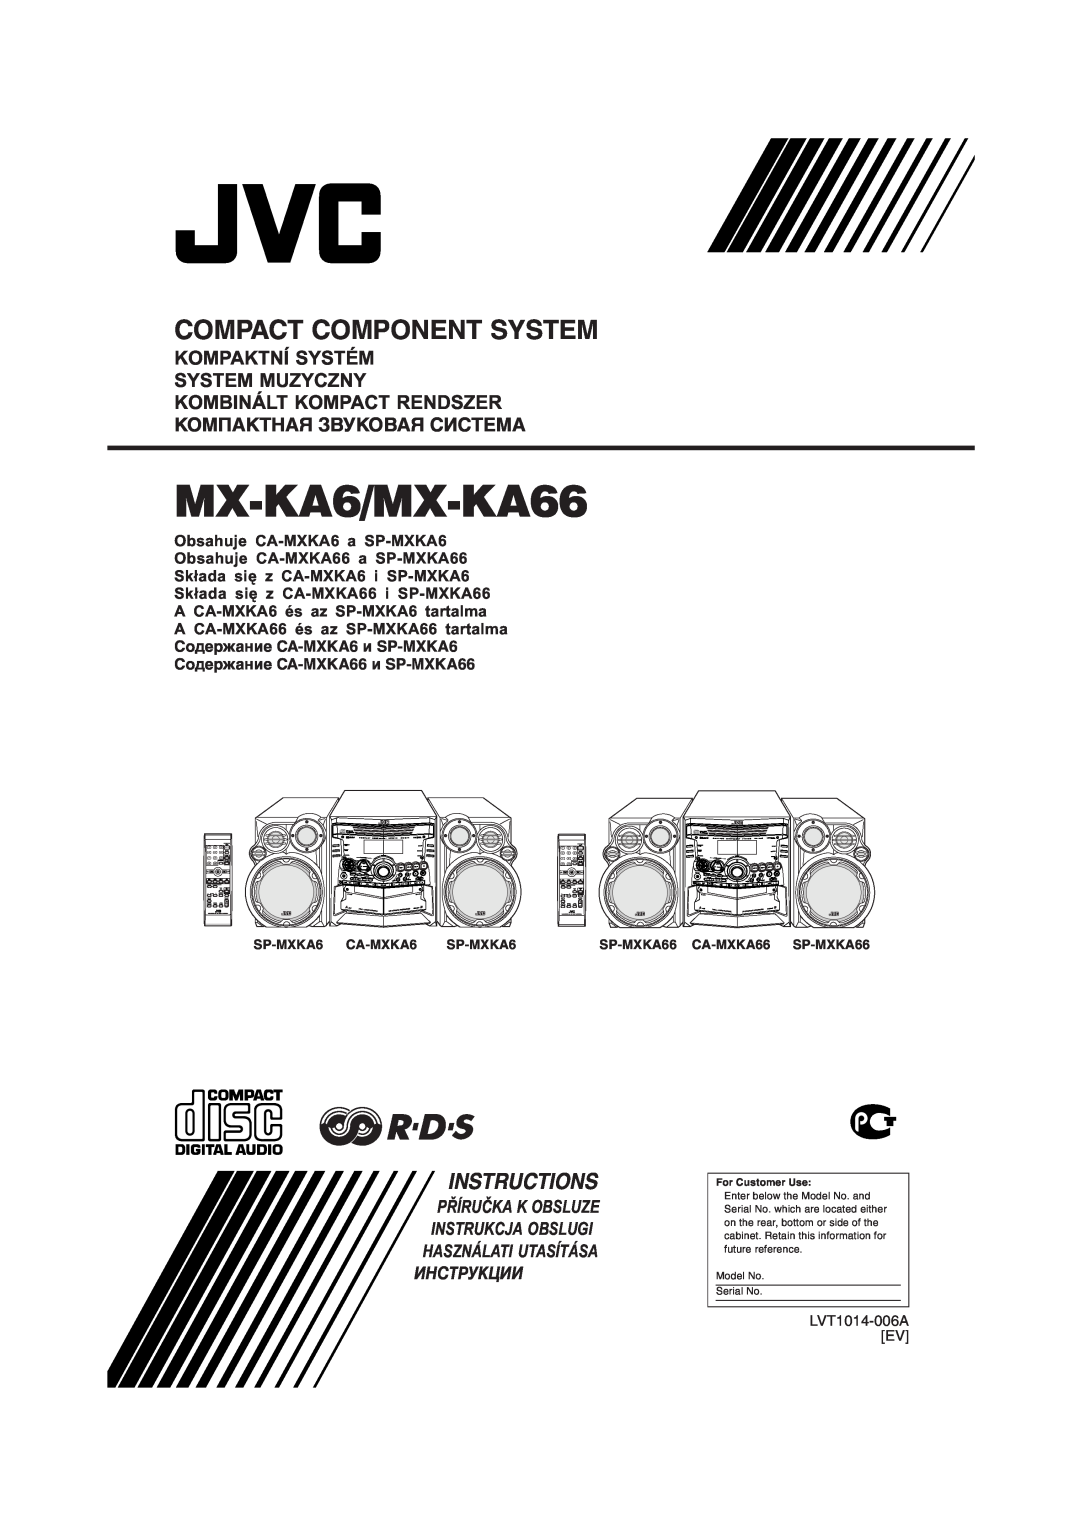 JVC manual Kompaktní Systém System Muzyczny, MX-KA6/MX-KA66, Compact Component System, Instructions, Инструкции 